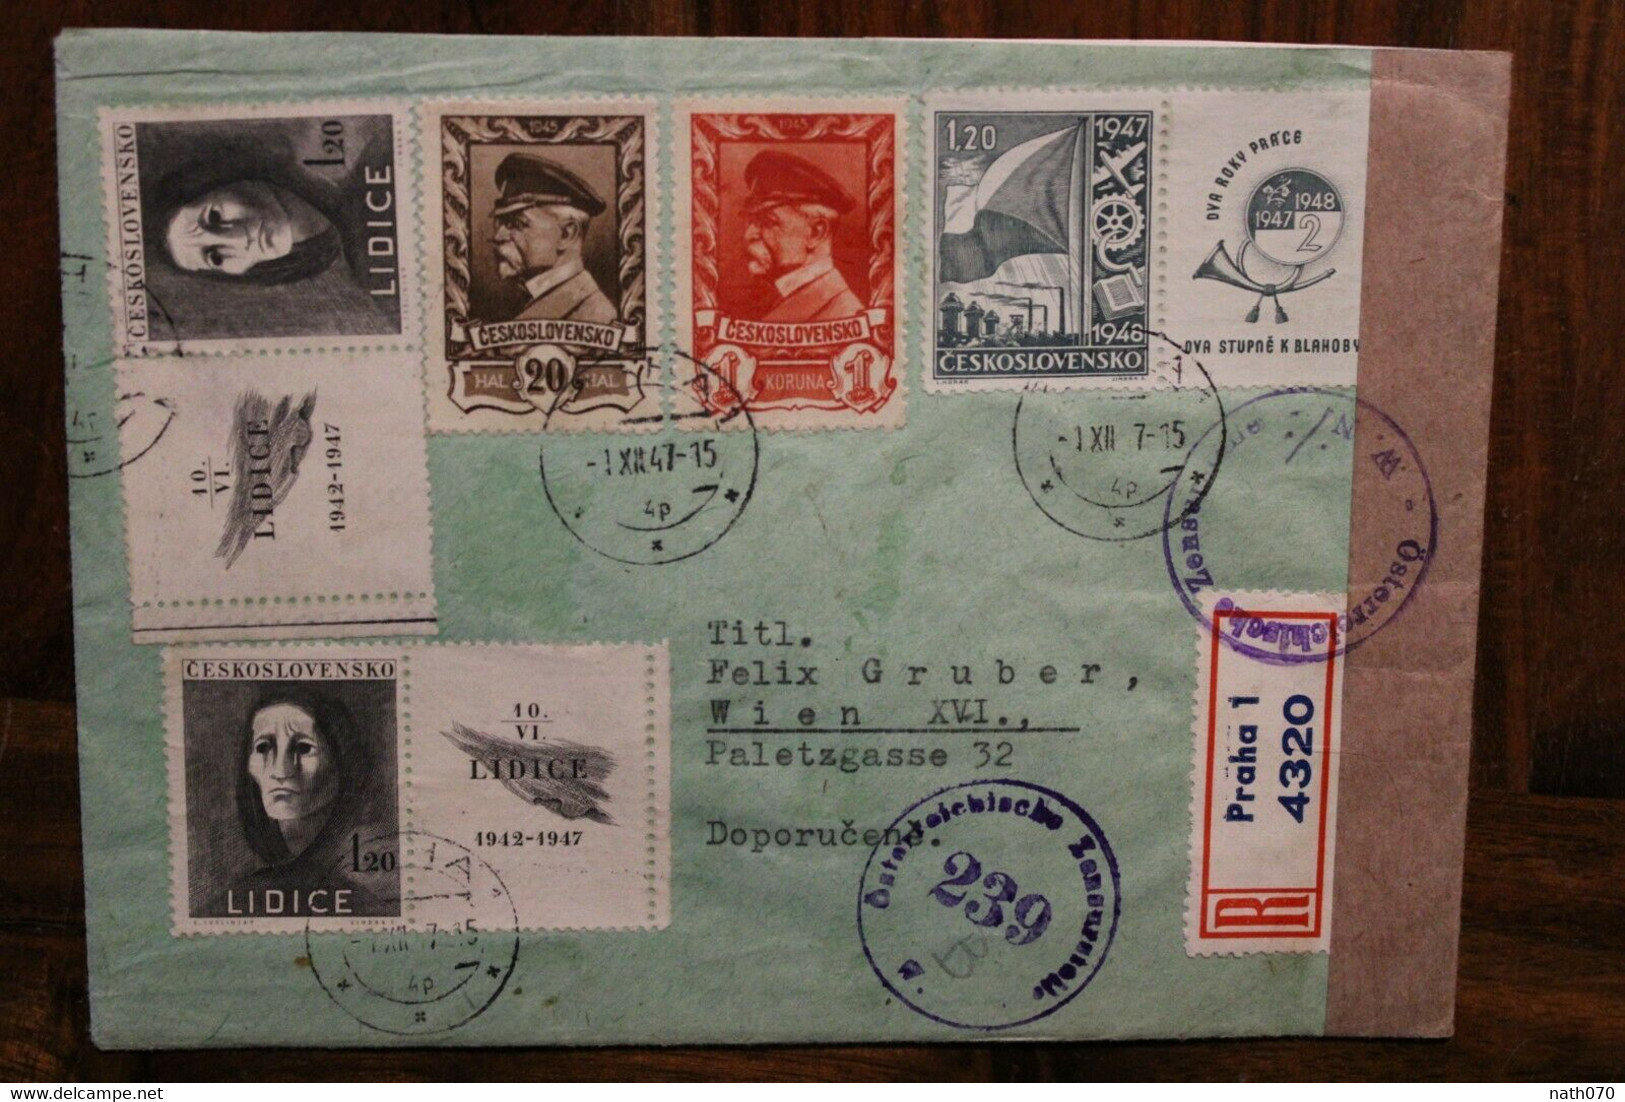 1947 Tschechoslowakei Cover Air Mail Letadlem Luftpost Zensur Osterreich Censure Alliés Einschreiben Recommandé - Storia Postale